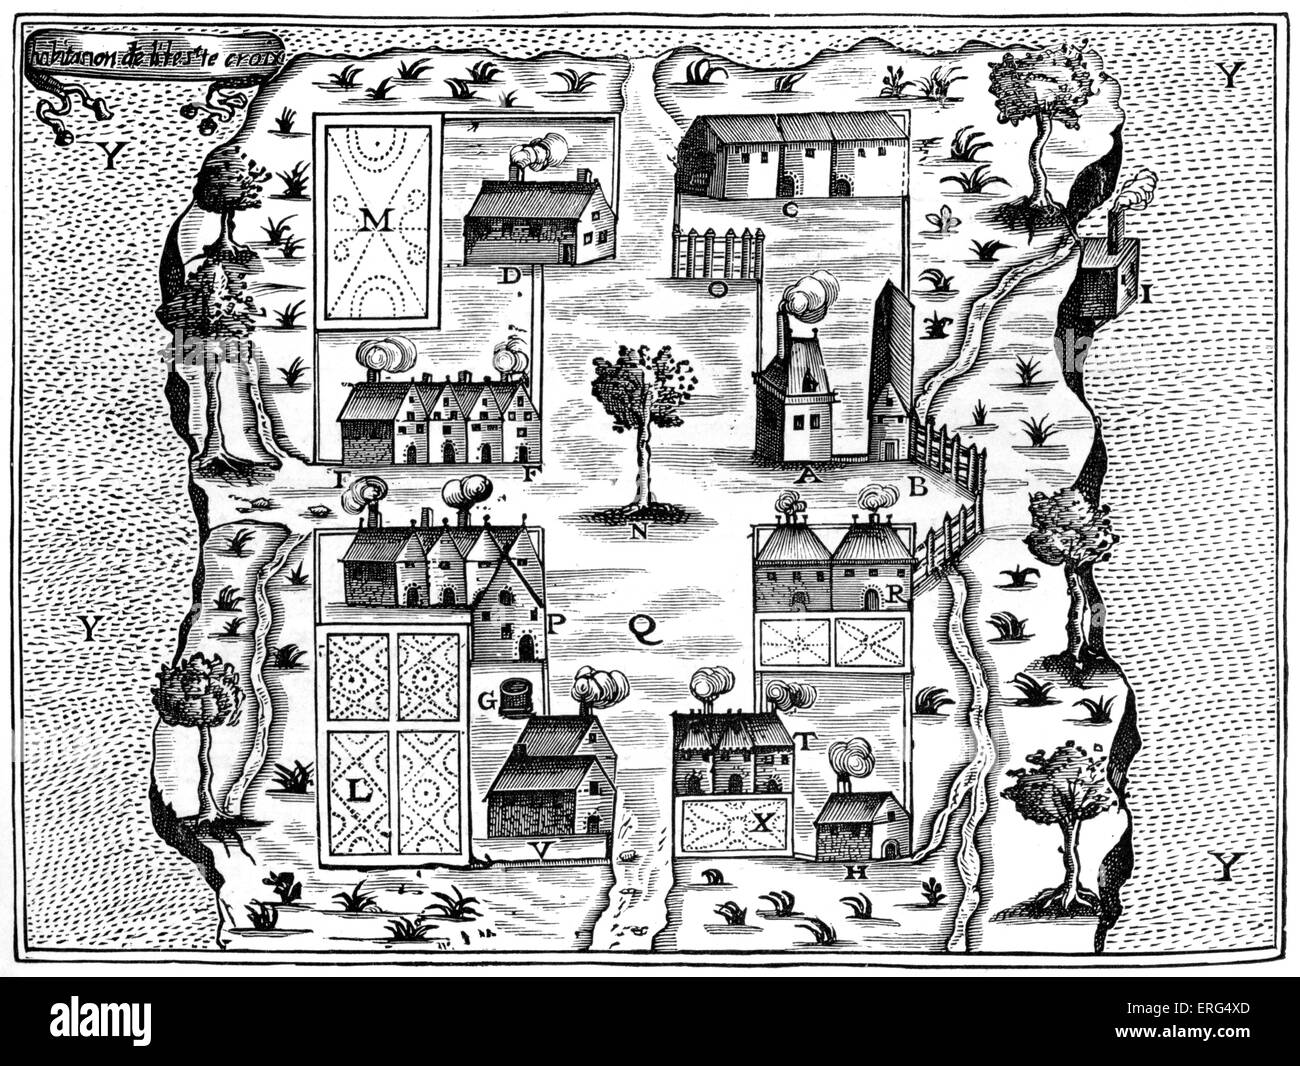 Insel Saint Croix / Île Sainte-Croix früheste französische Siedlung in Acadia, Nordamerika, 1604. Von "Reisen" durch Champlain, Stockfoto